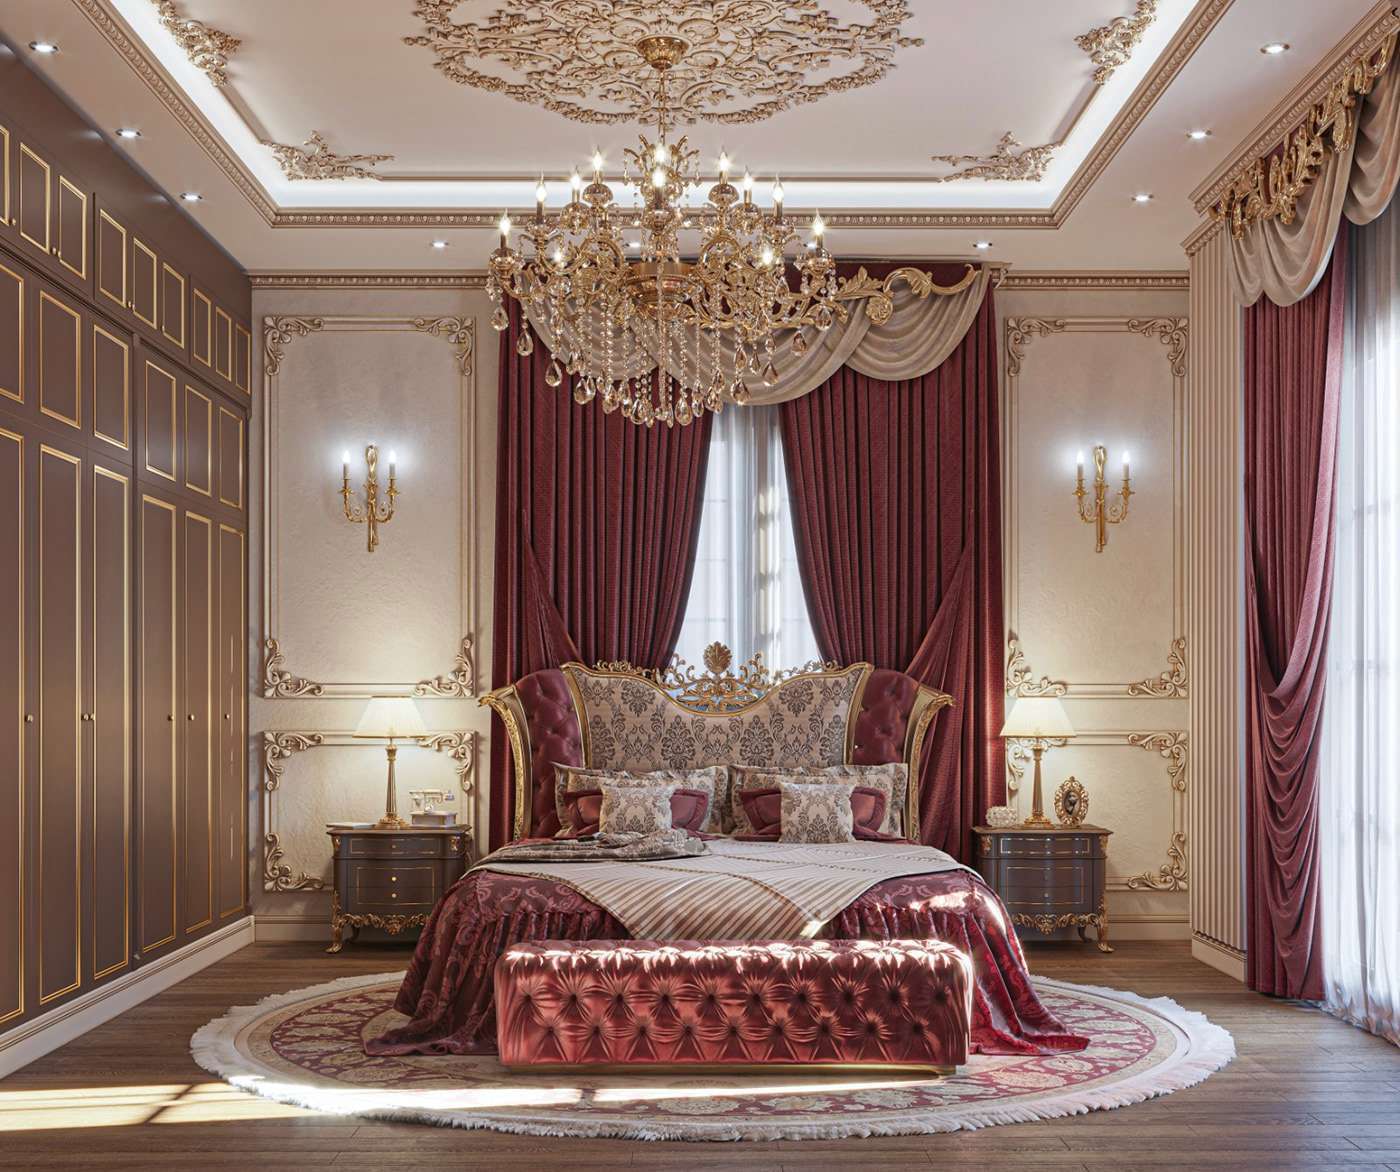 Mẫu nội thất phòng ngủ phong cách cổ điển với giường ngủ mà đỏ booc đô nổi bật